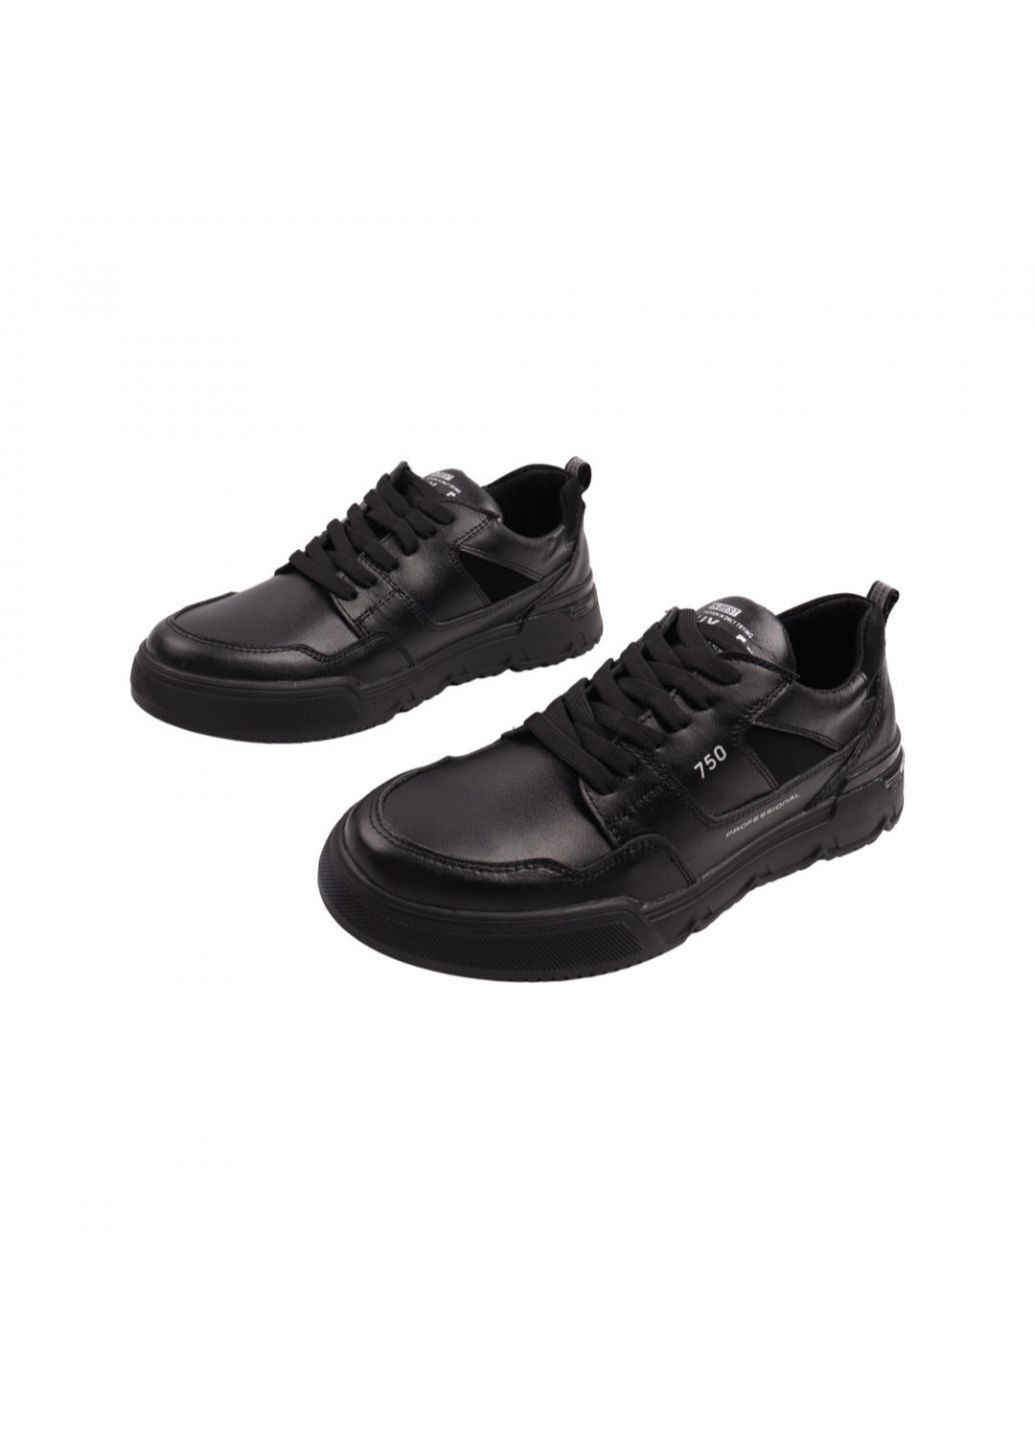 Черные кроссовки мужские черные натуральная кожа Konors 646-22DTC